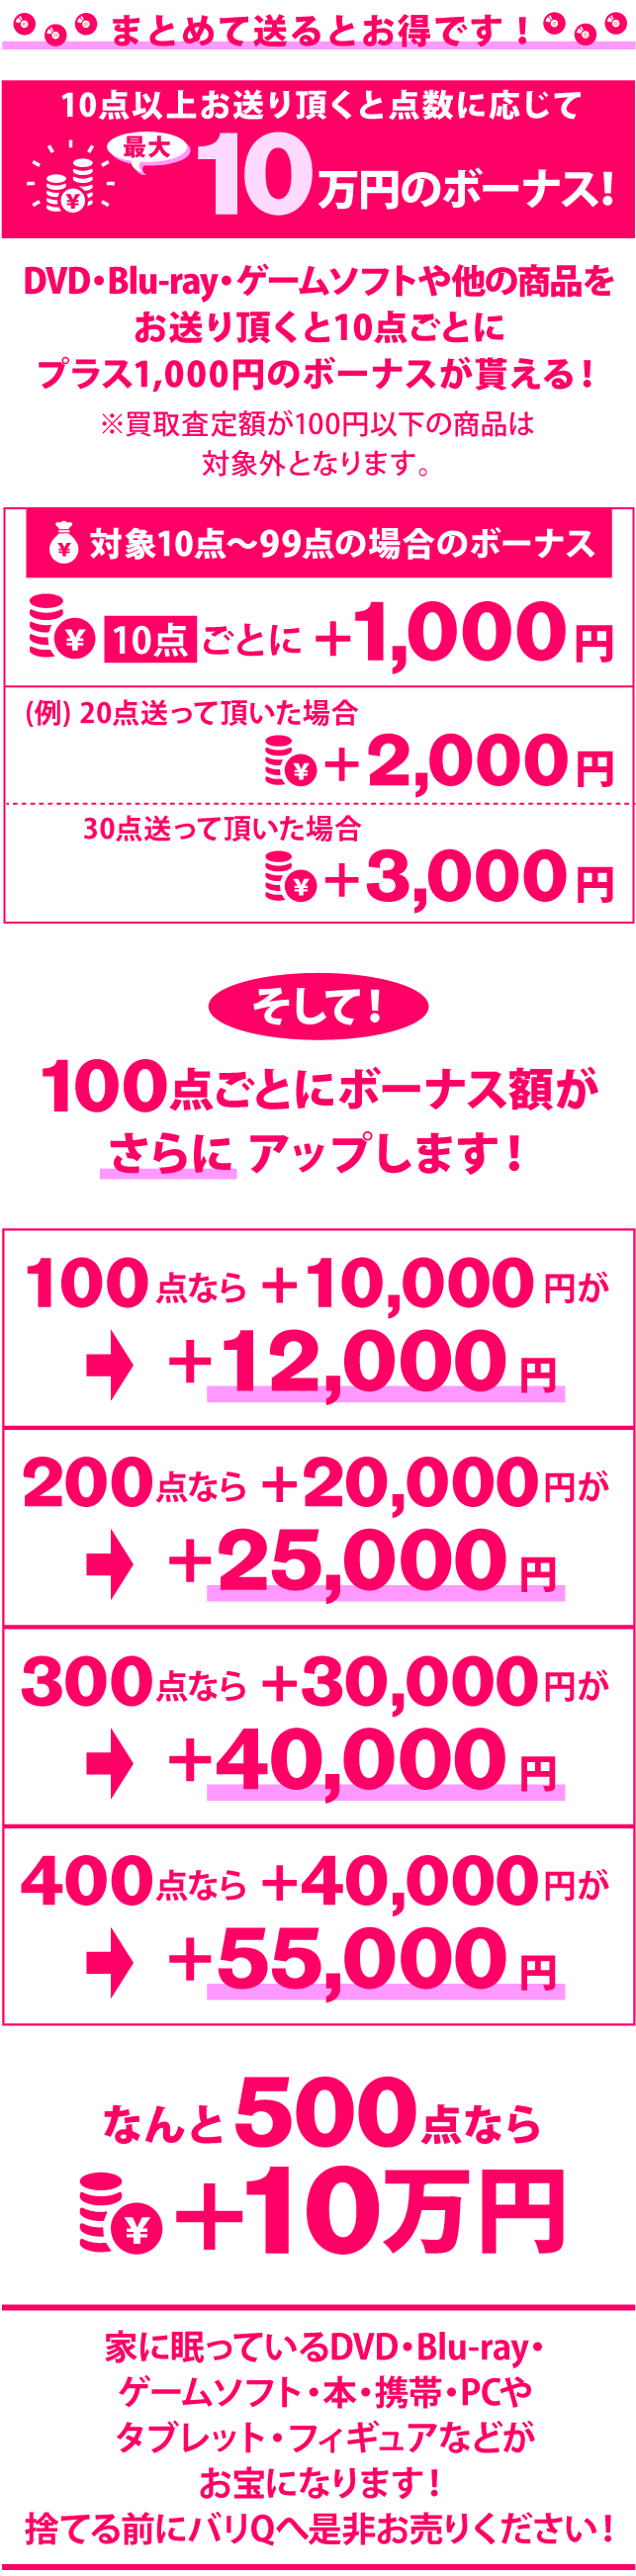 まとめ売りで最大10万円ボーナスキャンペーンの詳細